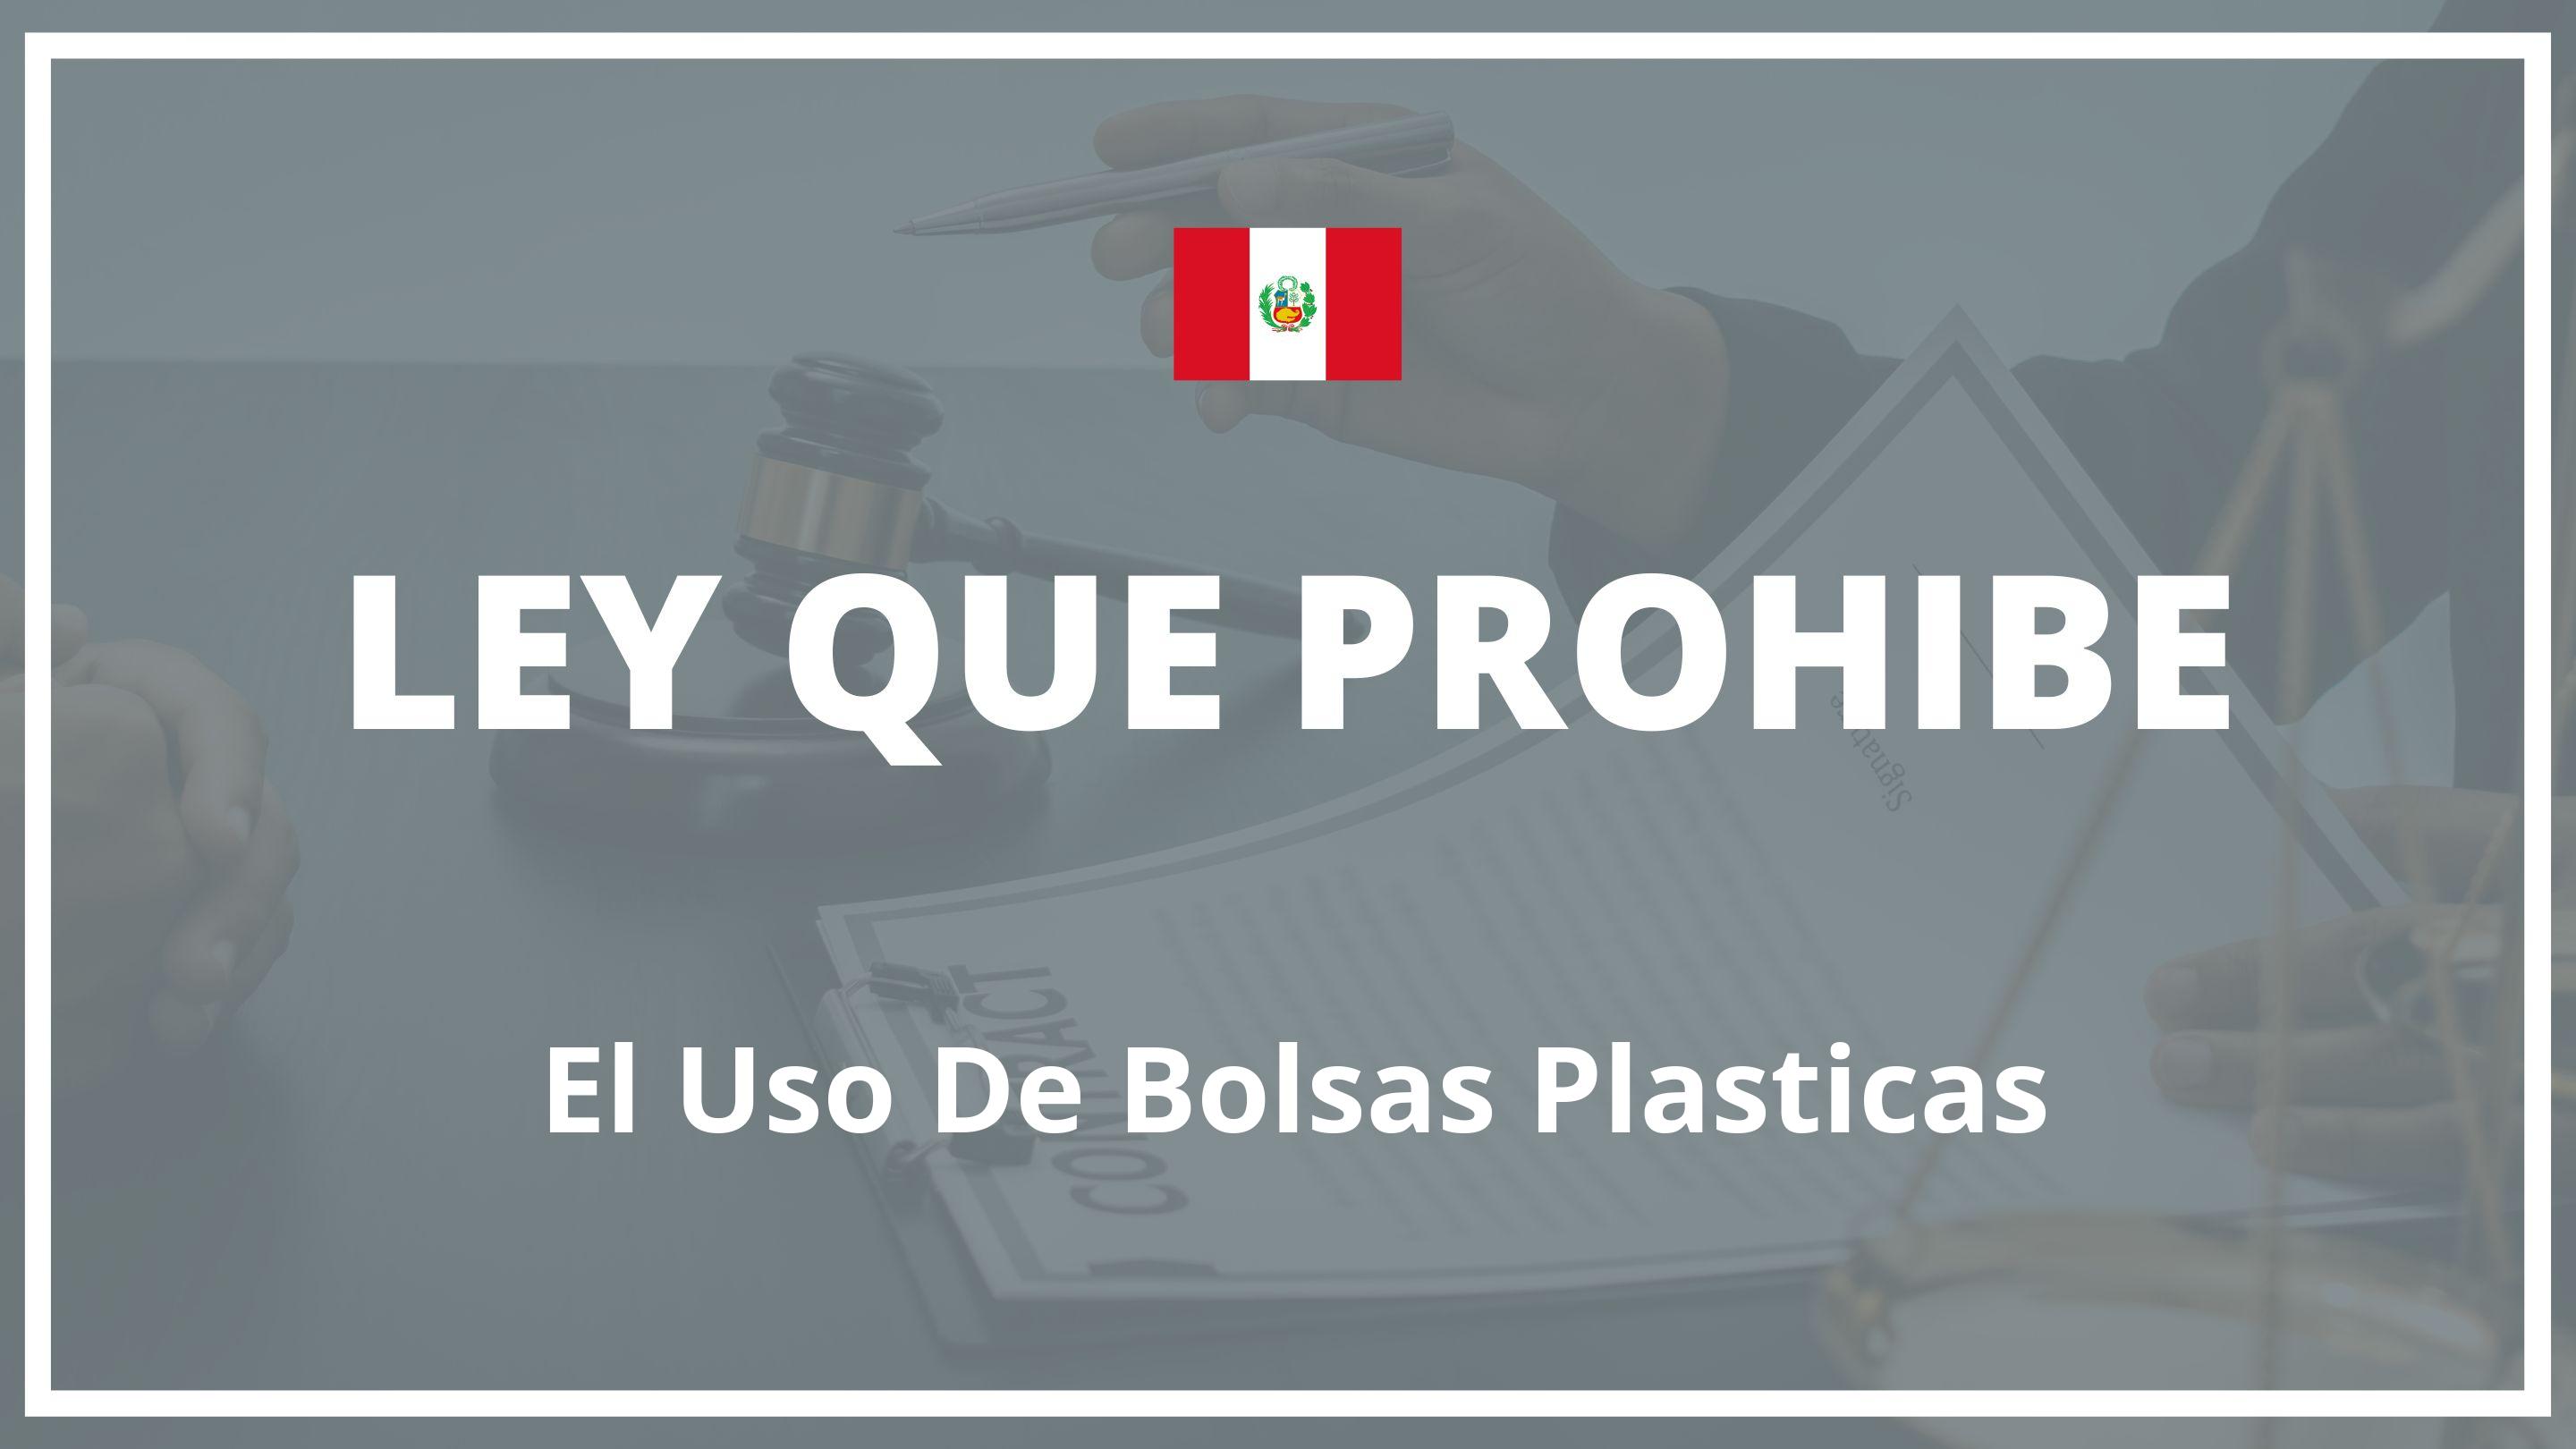 Ley que prohibe el uso de bolsas plasticas Peru